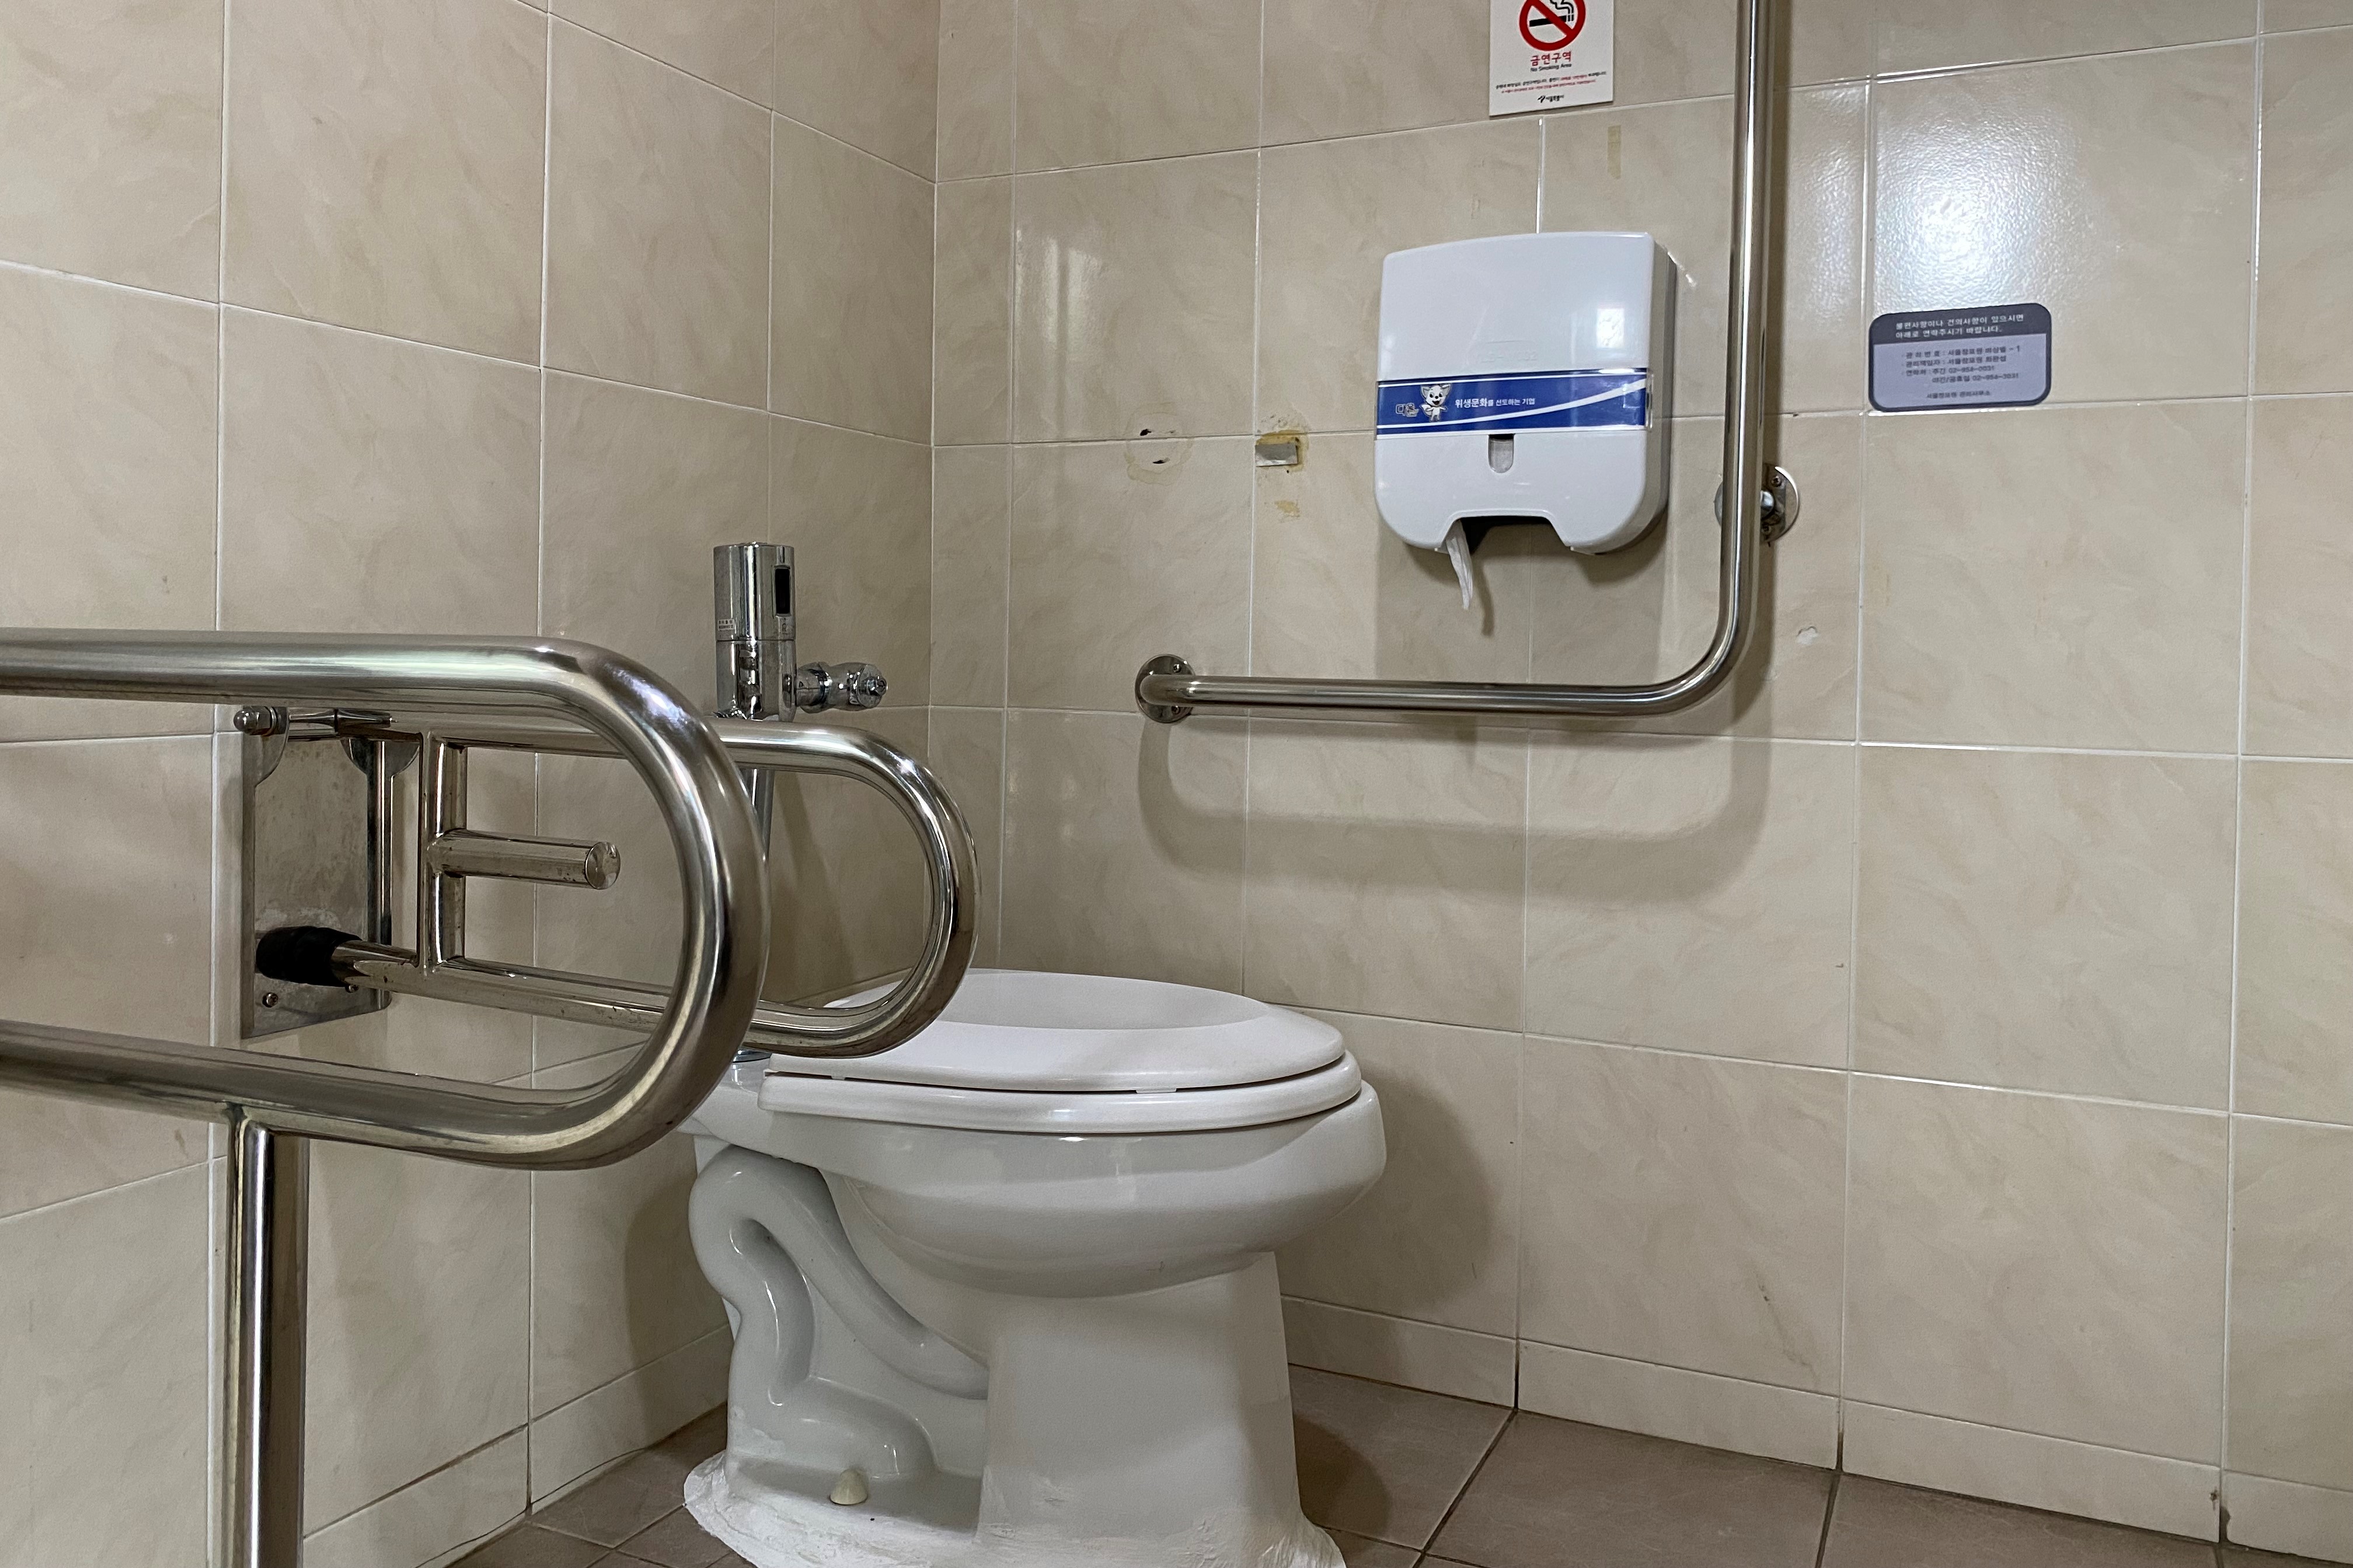 장애인화장실0 : 넓은 공간의 서울창포원 장애인화장실 내부 전경